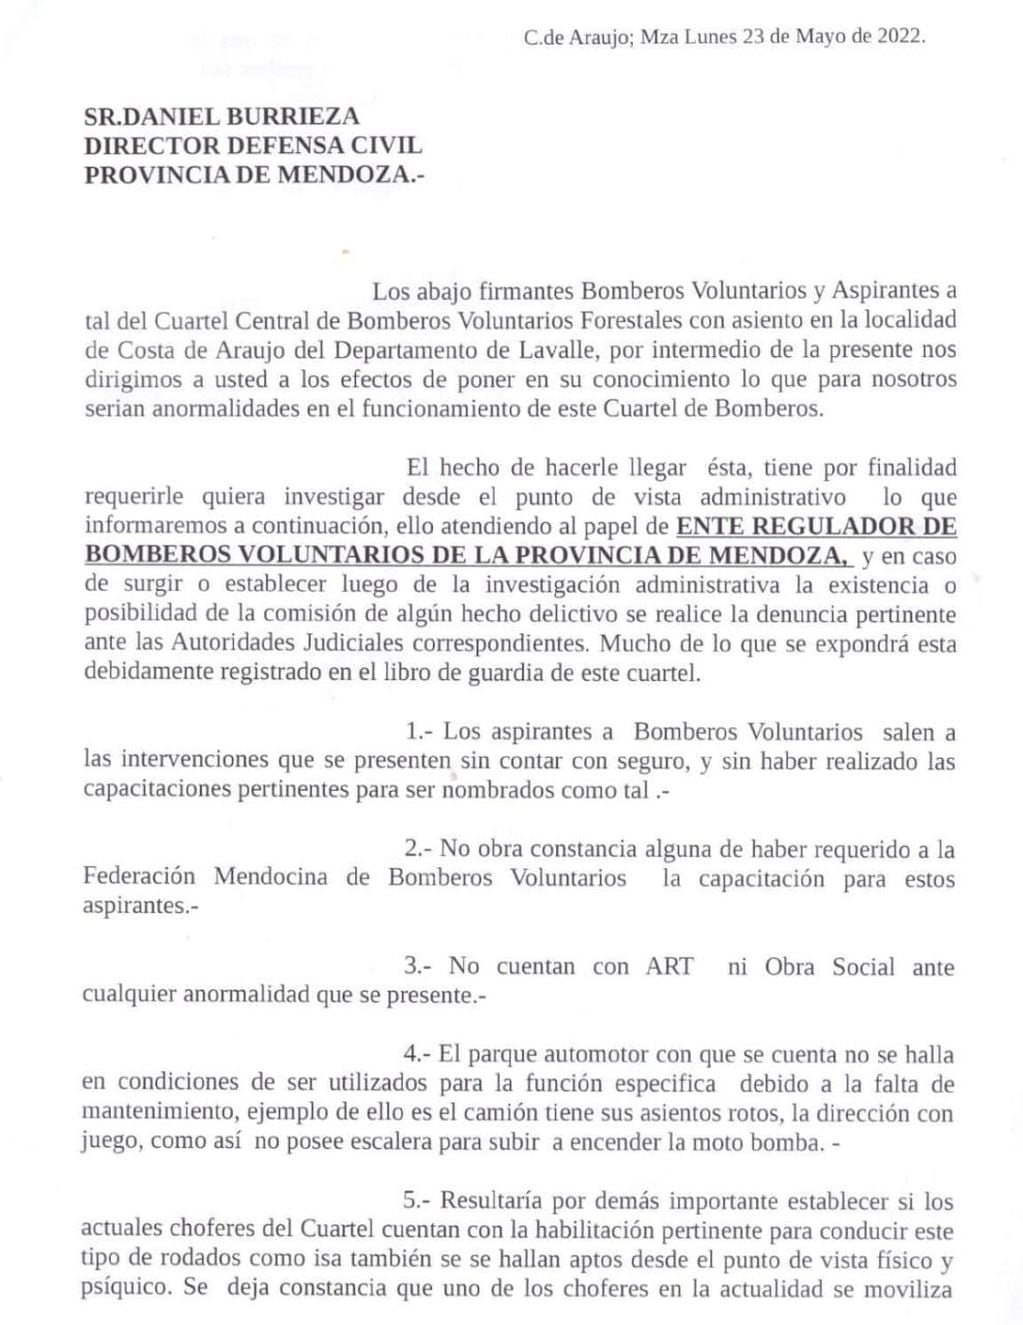 Bomberos y aspirantes del cuartel de Costa de Araujo elevaron una nota a Defensa Civil para constatar irregularidades por parte de la comisión.